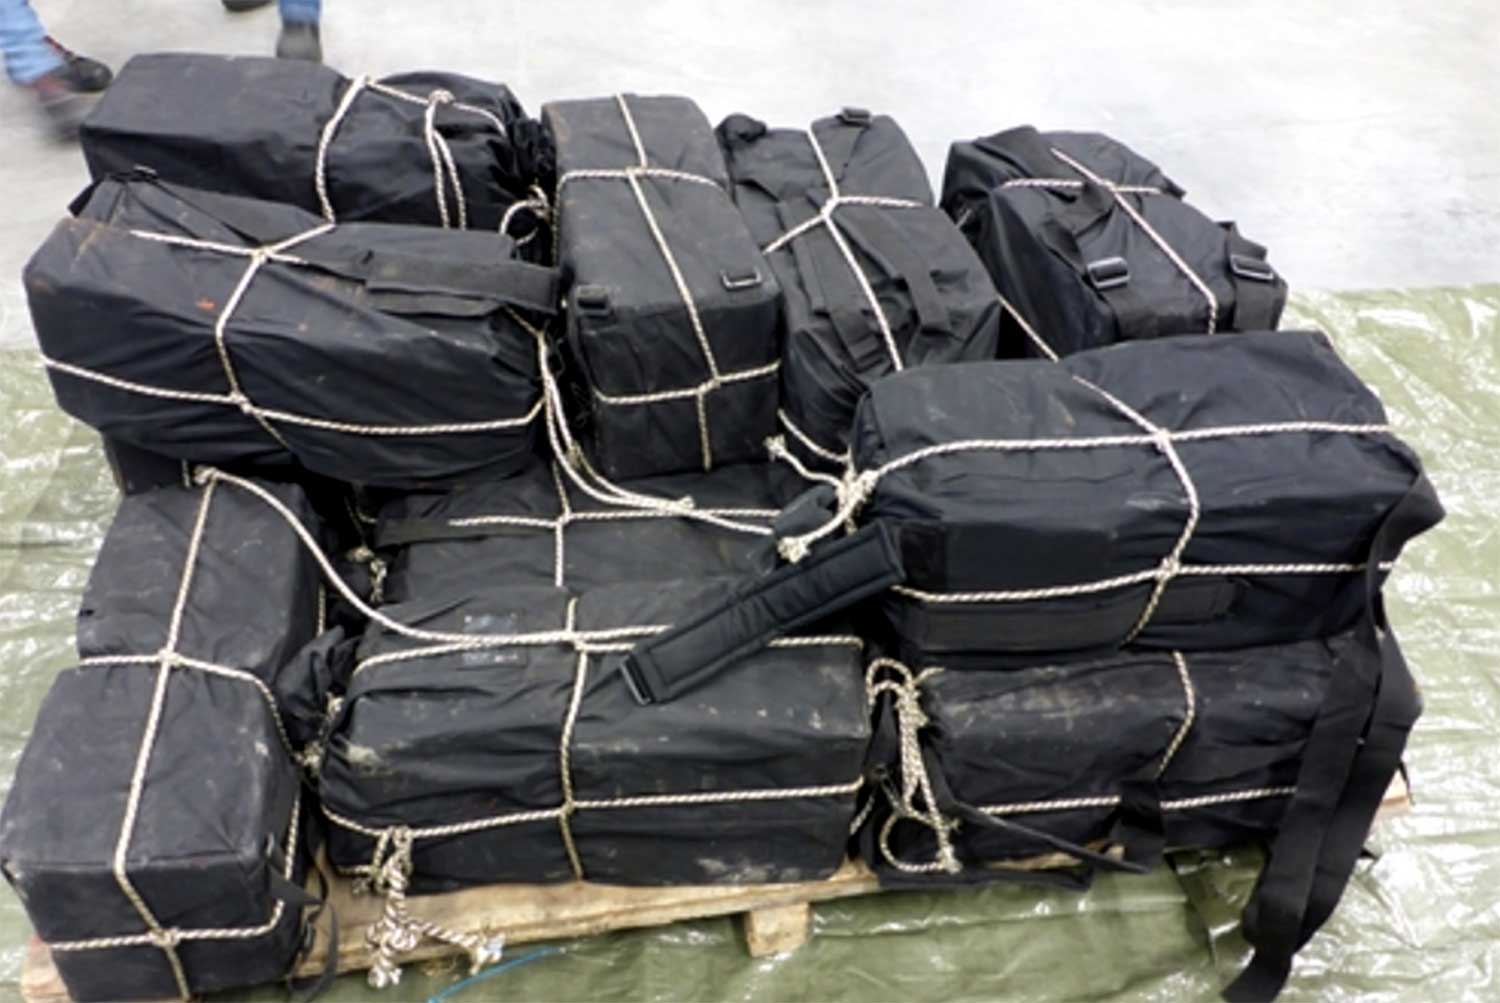 400 kilo cocaïne in sporttassen gevonden na buitenlandse tip 